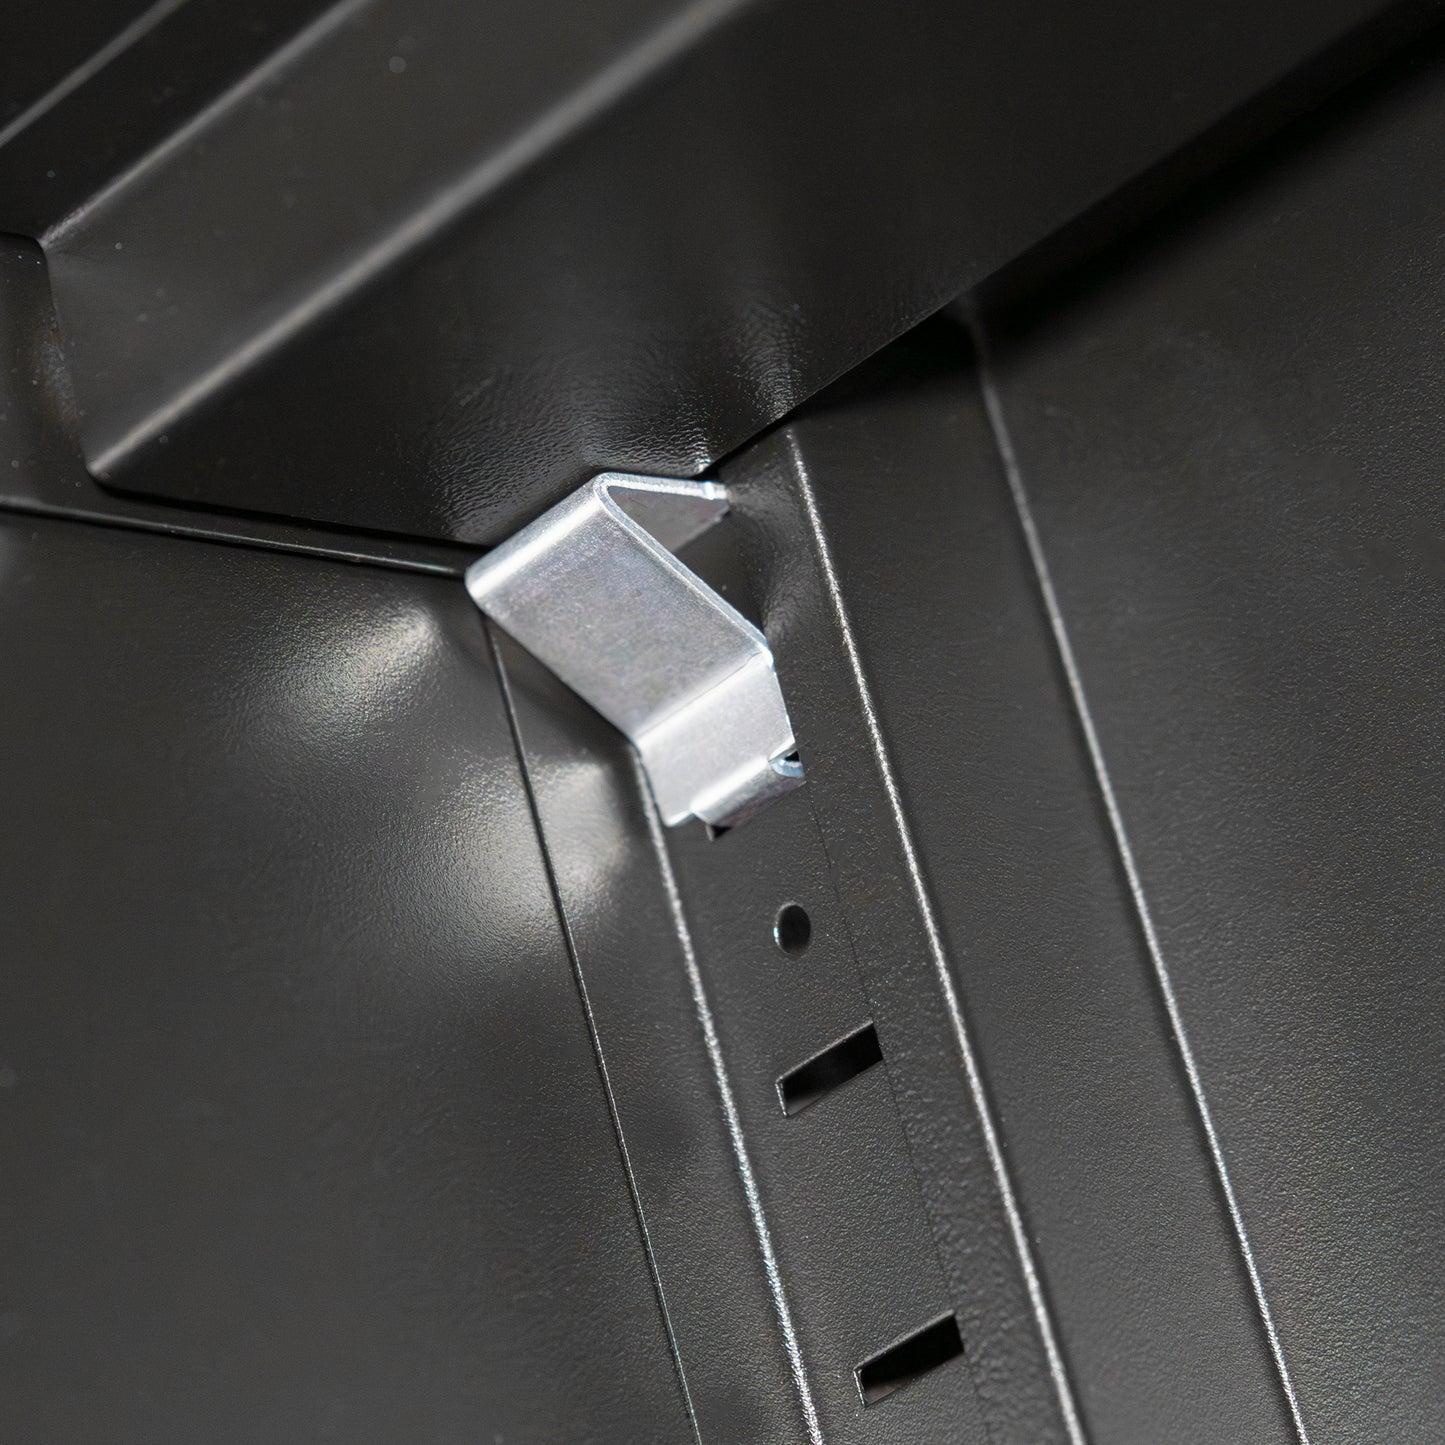 Lockable Steel Storage Cabinet with Adjustable Shelves, Black